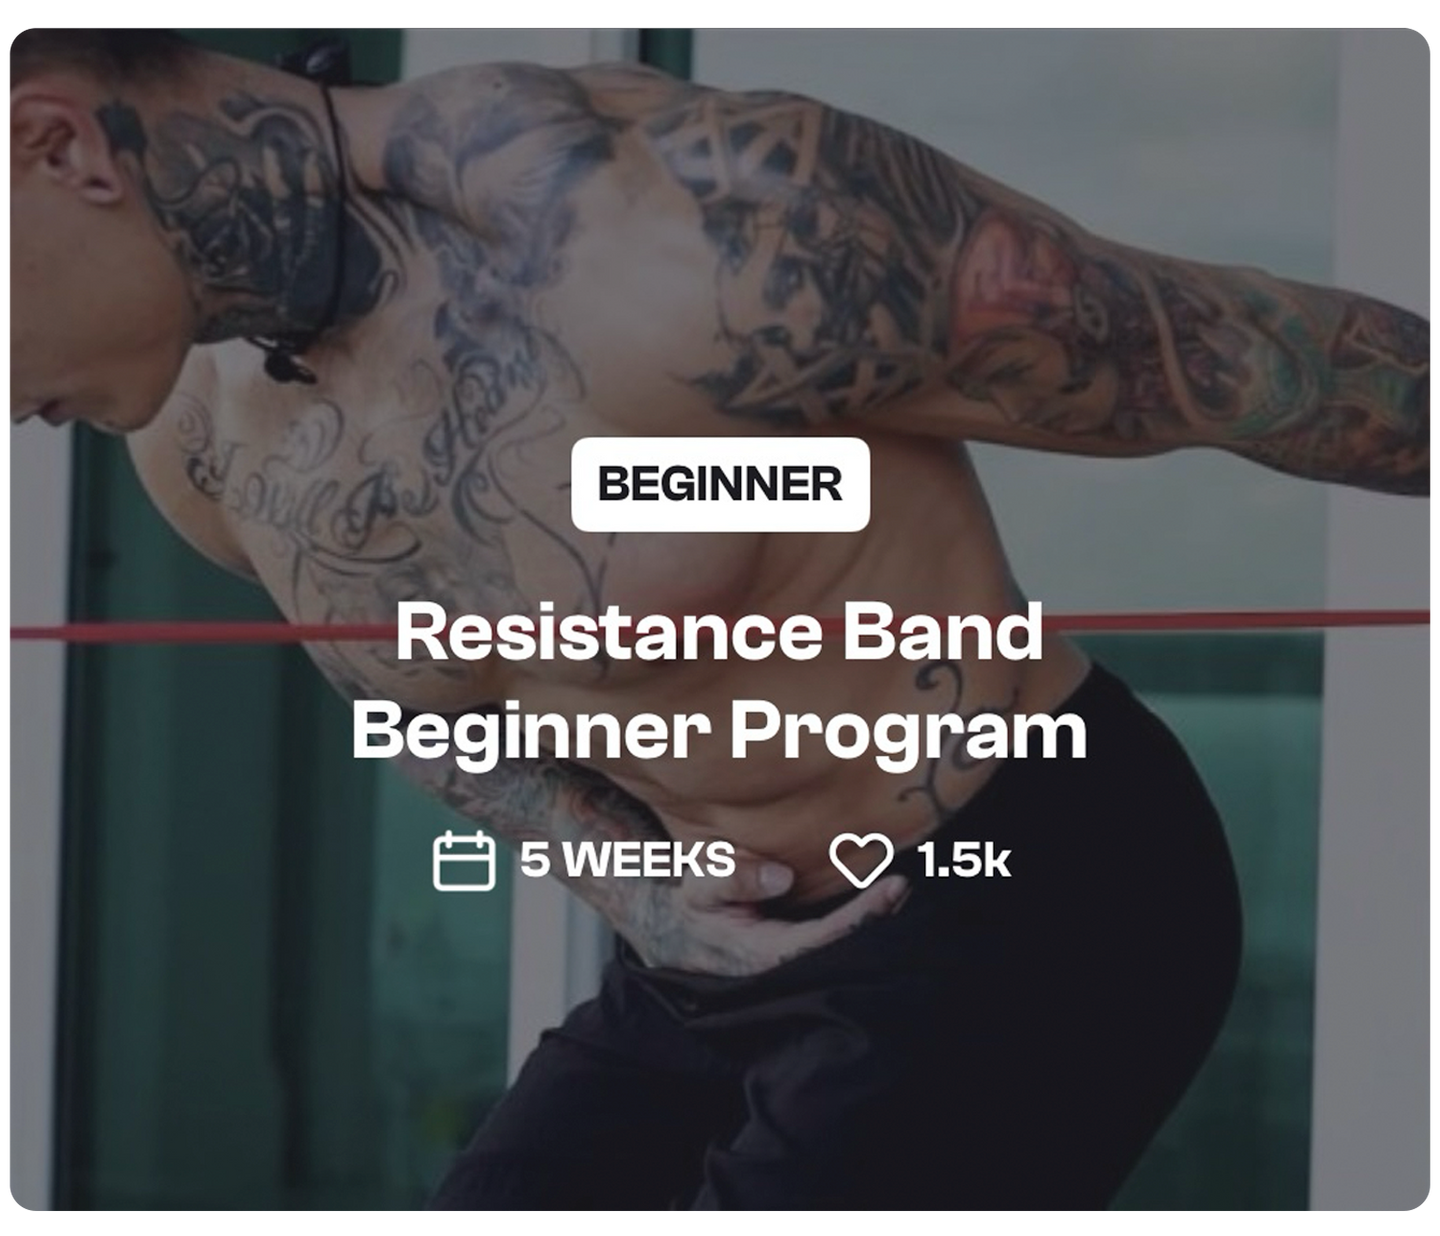 Resistance Band Beginner Program - THENX